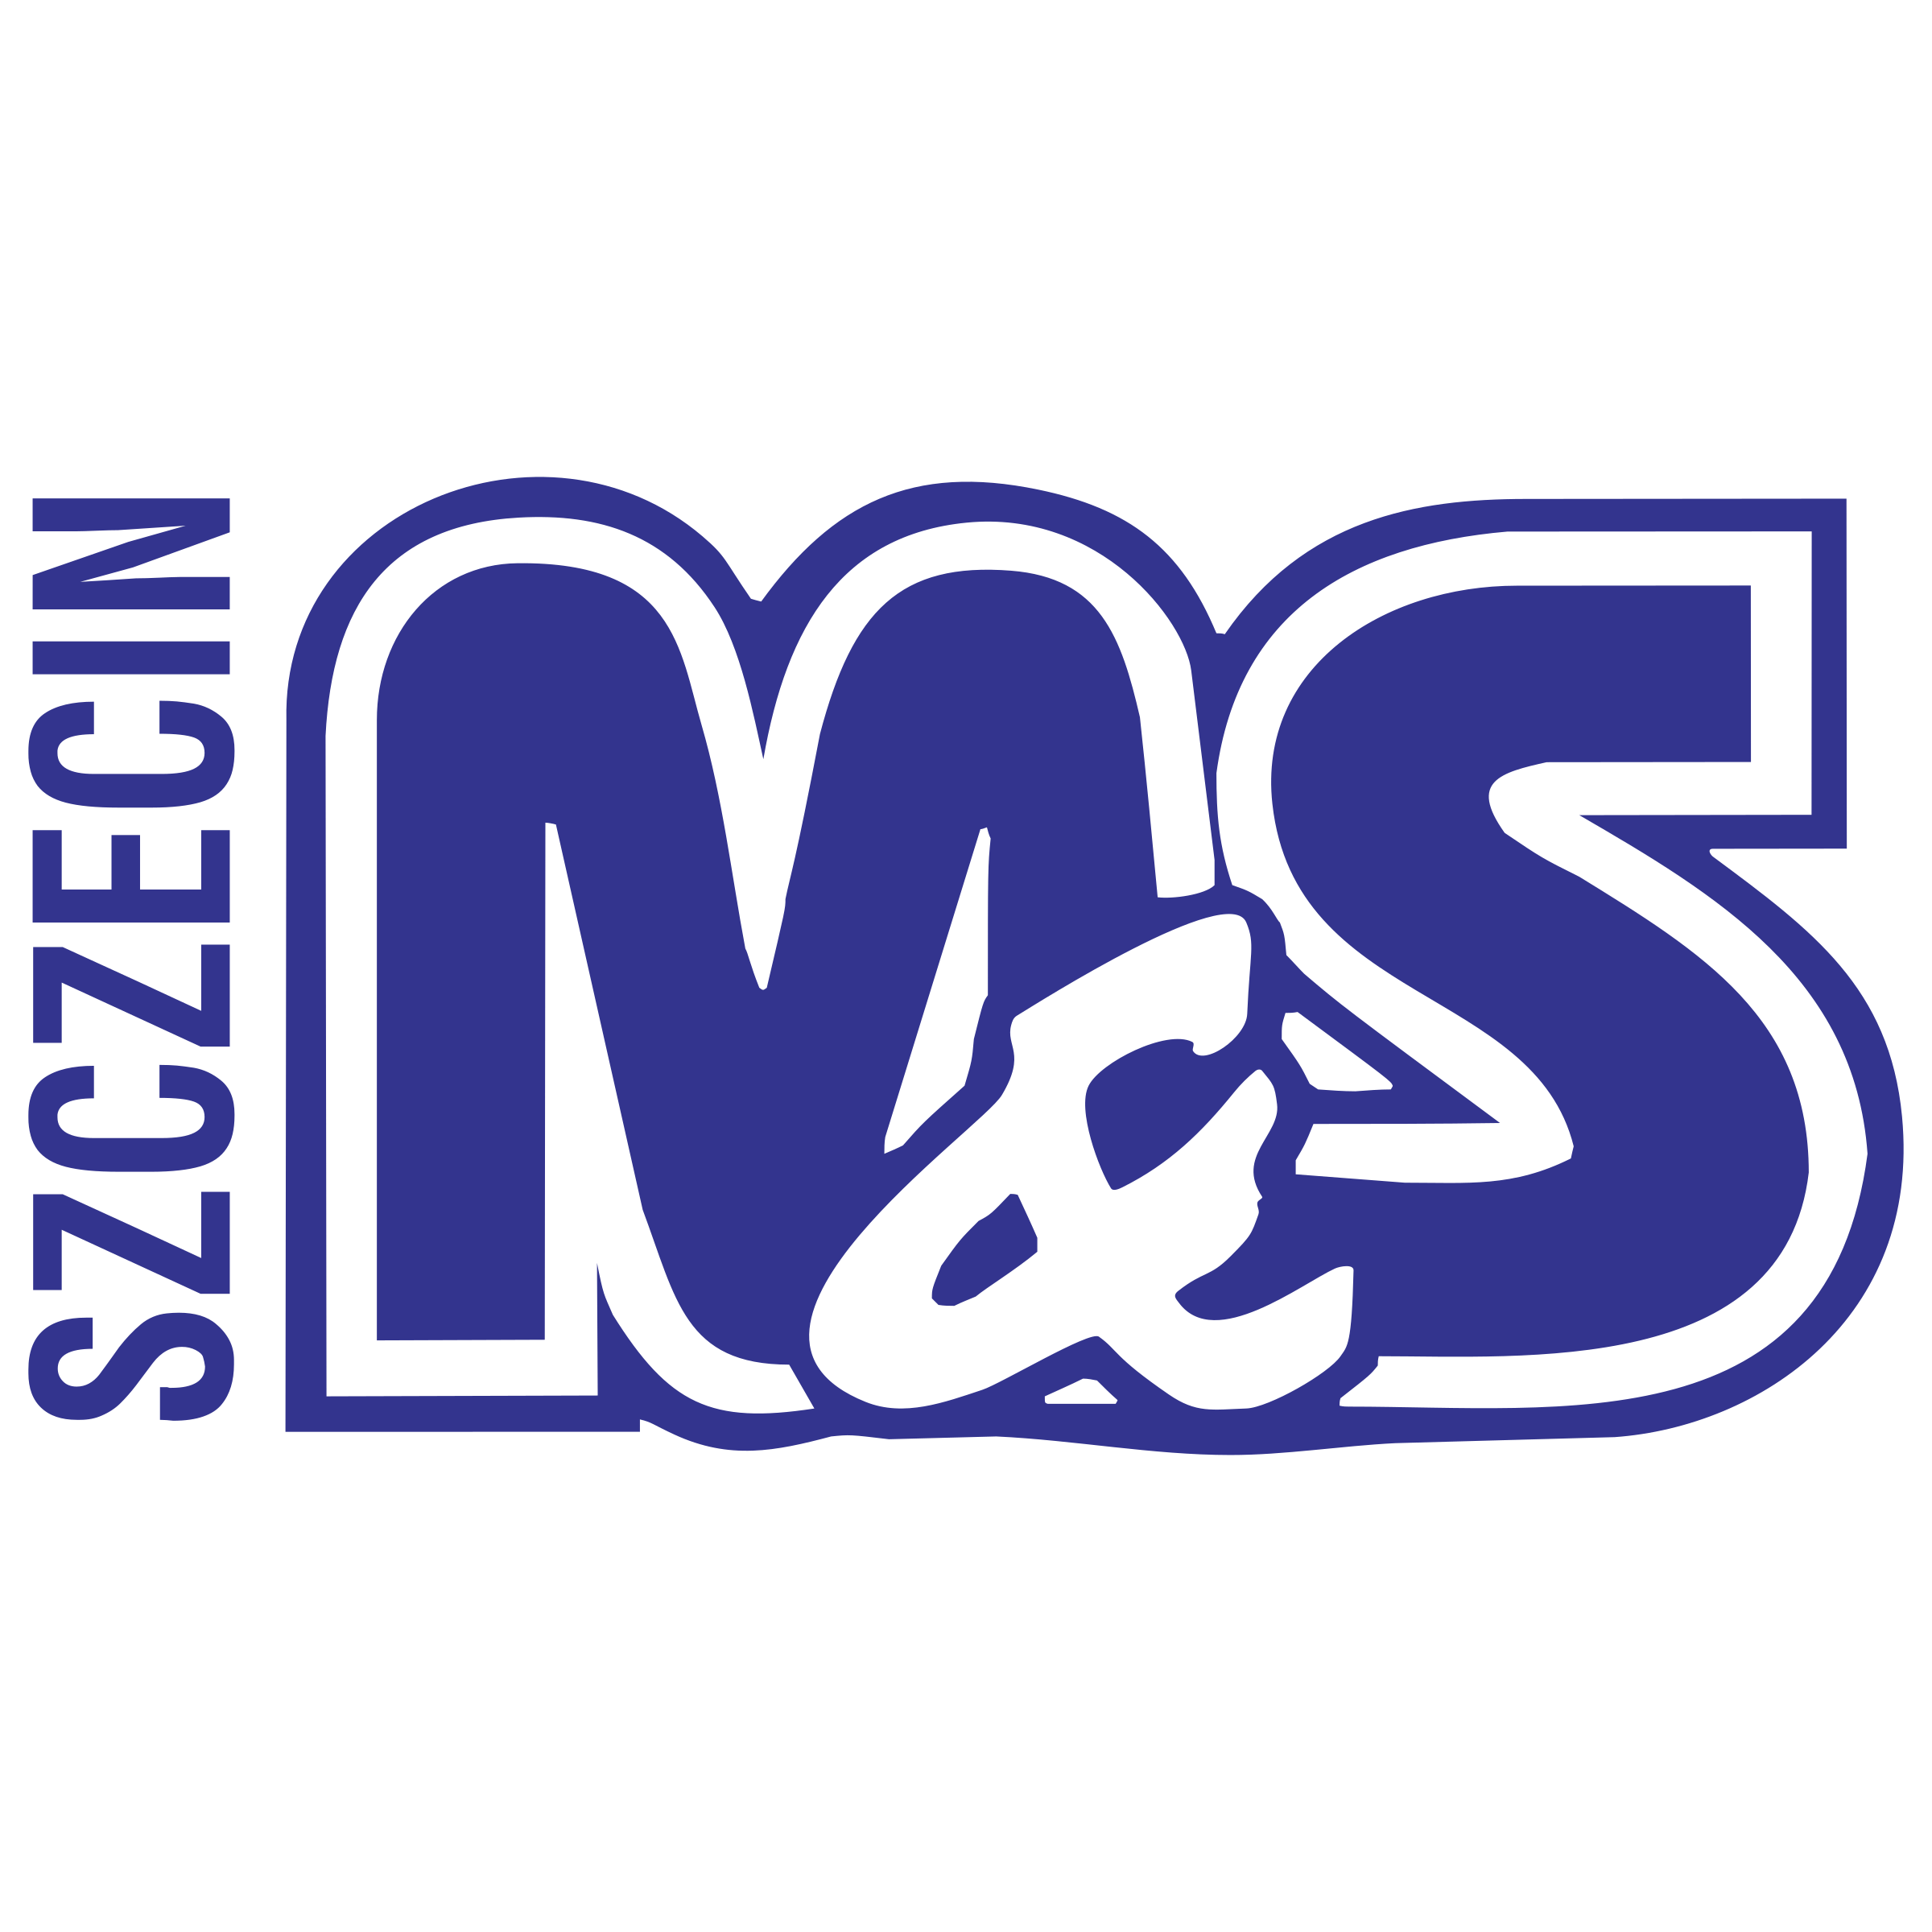 Логотип s. Логотип МС. Sumeko логотип. Лого s m вектор. Мс s